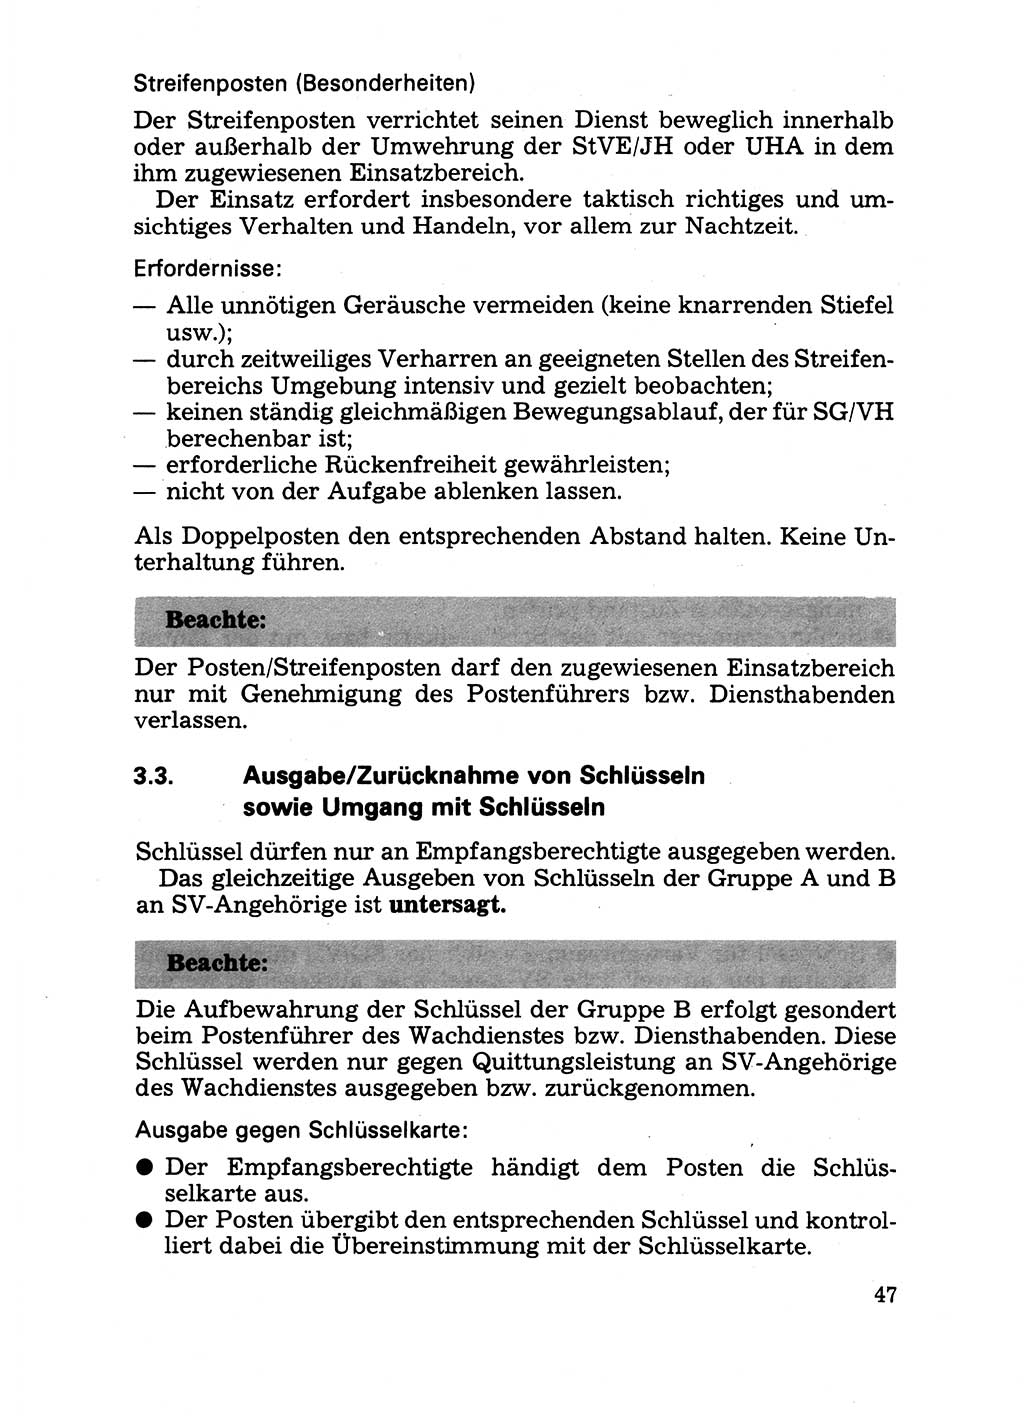 Handbuch für operative Dienste, Abteilung Strafvollzug (SV) [Ministerium des Innern (MdI) Deutsche Demokratische Republik (DDR)] 1981, Seite 47 (Hb. op. D. Abt. SV MdI DDR 1981, S. 47)